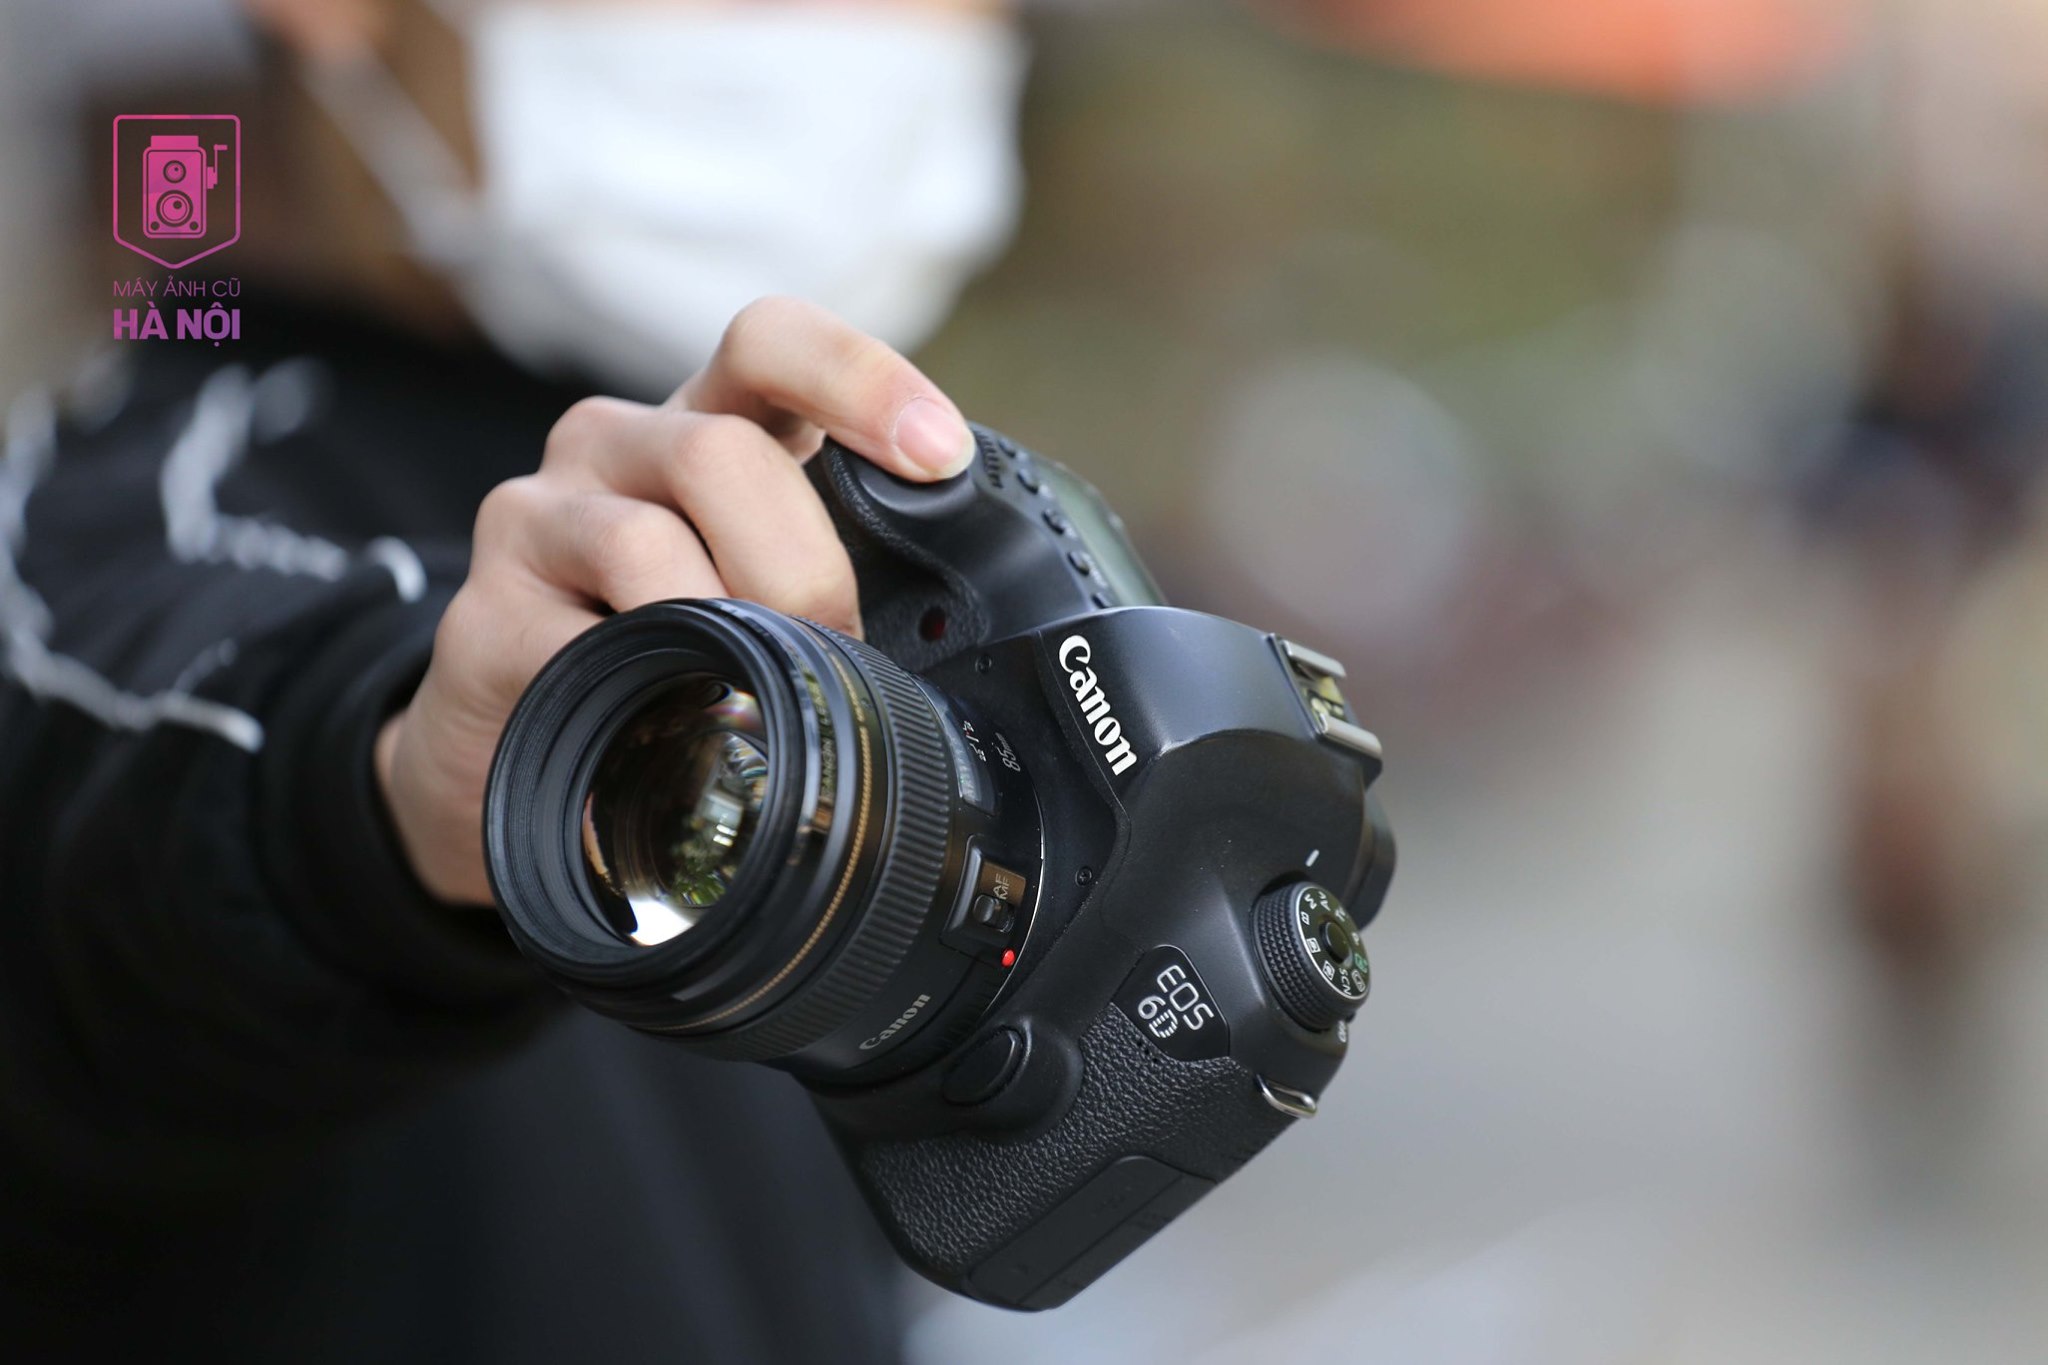 Canon 6D - Canon 6D là một trong những dòng máy cho ra những bức ảnh chất lượng cao, từ khả năng quay phim đến chụp ảnh tốc độ cao. Hãy cùng đón xem những hình ảnh ấn tượng bạn sẽ thu được khi sử dụng Canon 6D.